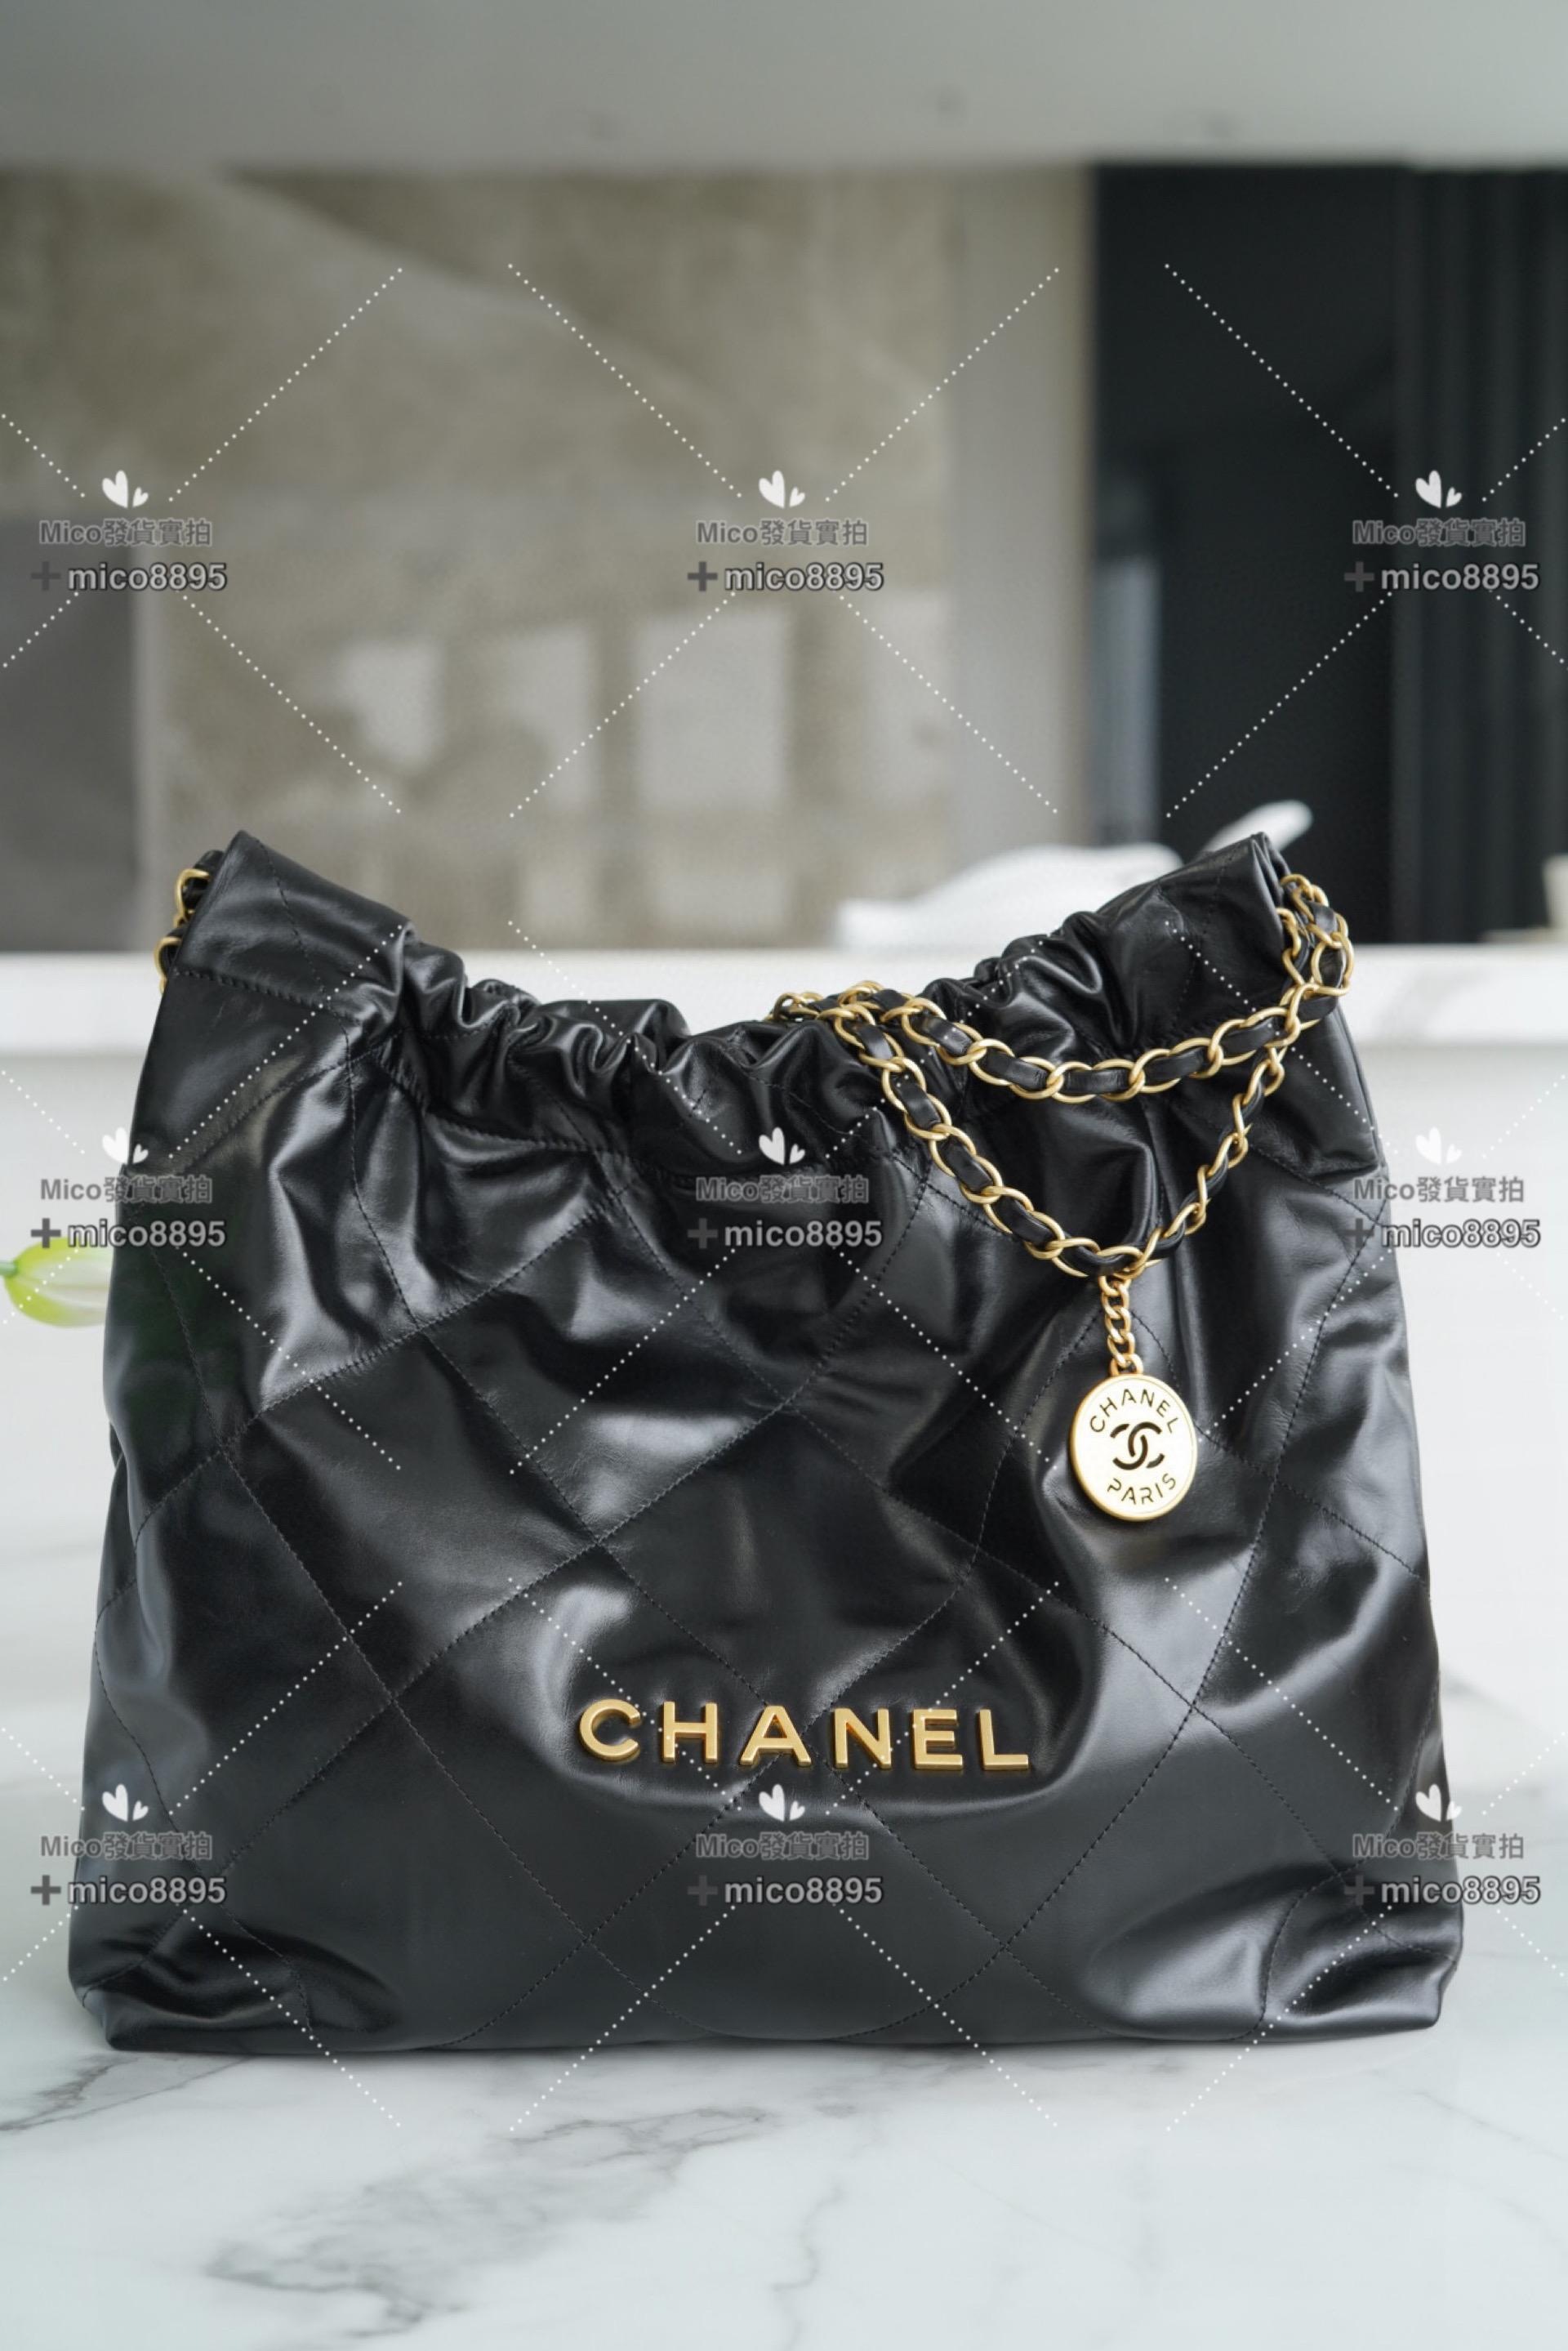 Chanel 新款 超實用𝟐𝟐手袋 黑金/中號/牛皮 購物包/通勤包/媽媽包